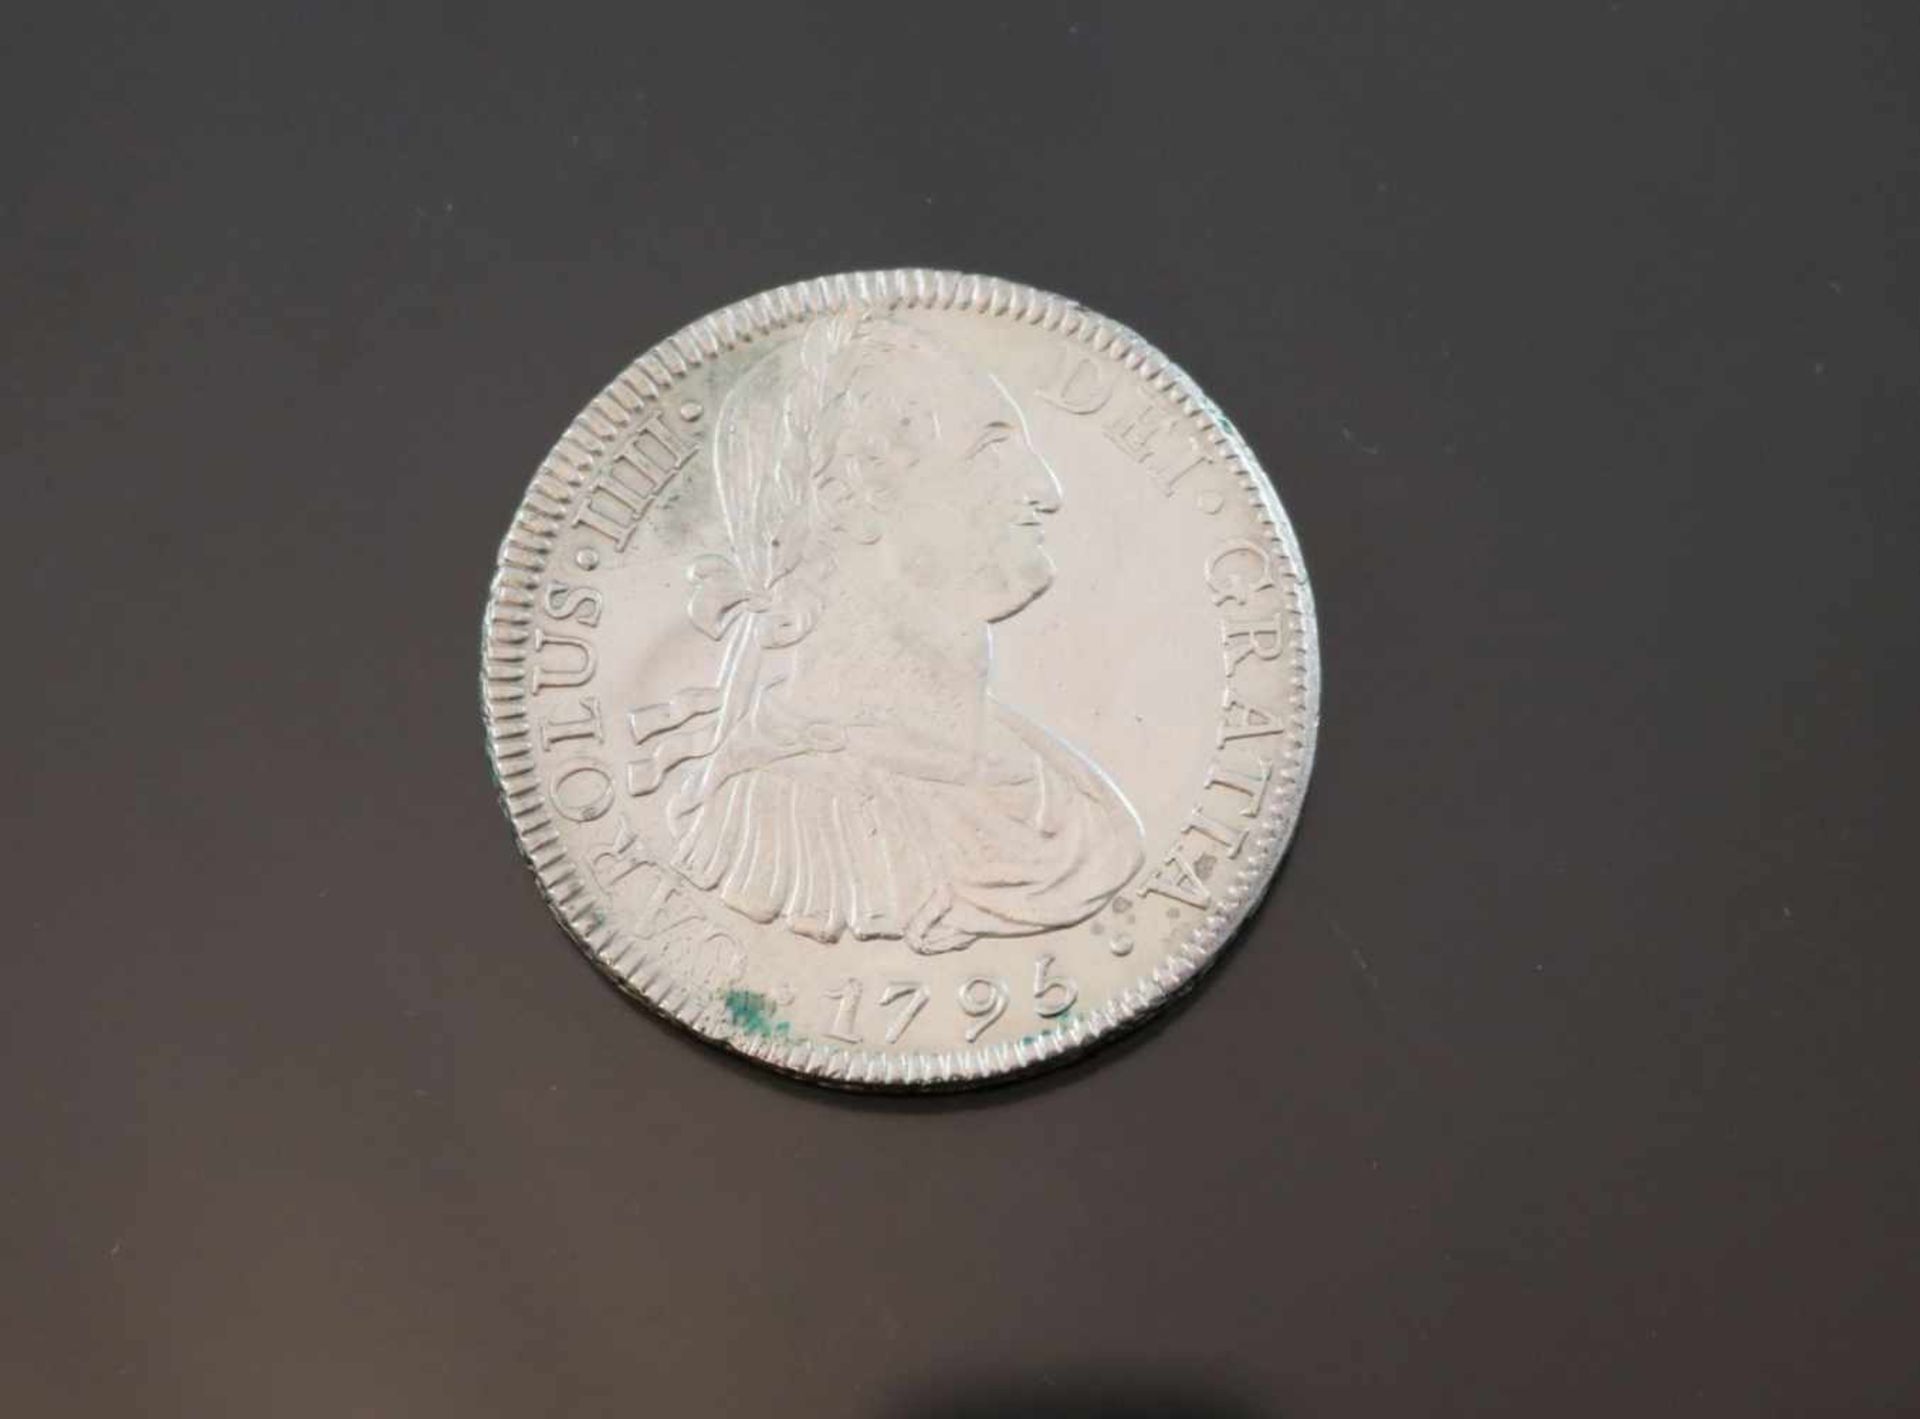 8 Reales 1795 Mexico Charles IIIIGewicht: 26,8 Gramm Größe: 39,66 mm Zustand: f-fz- - -25.00 % - Image 2 of 2